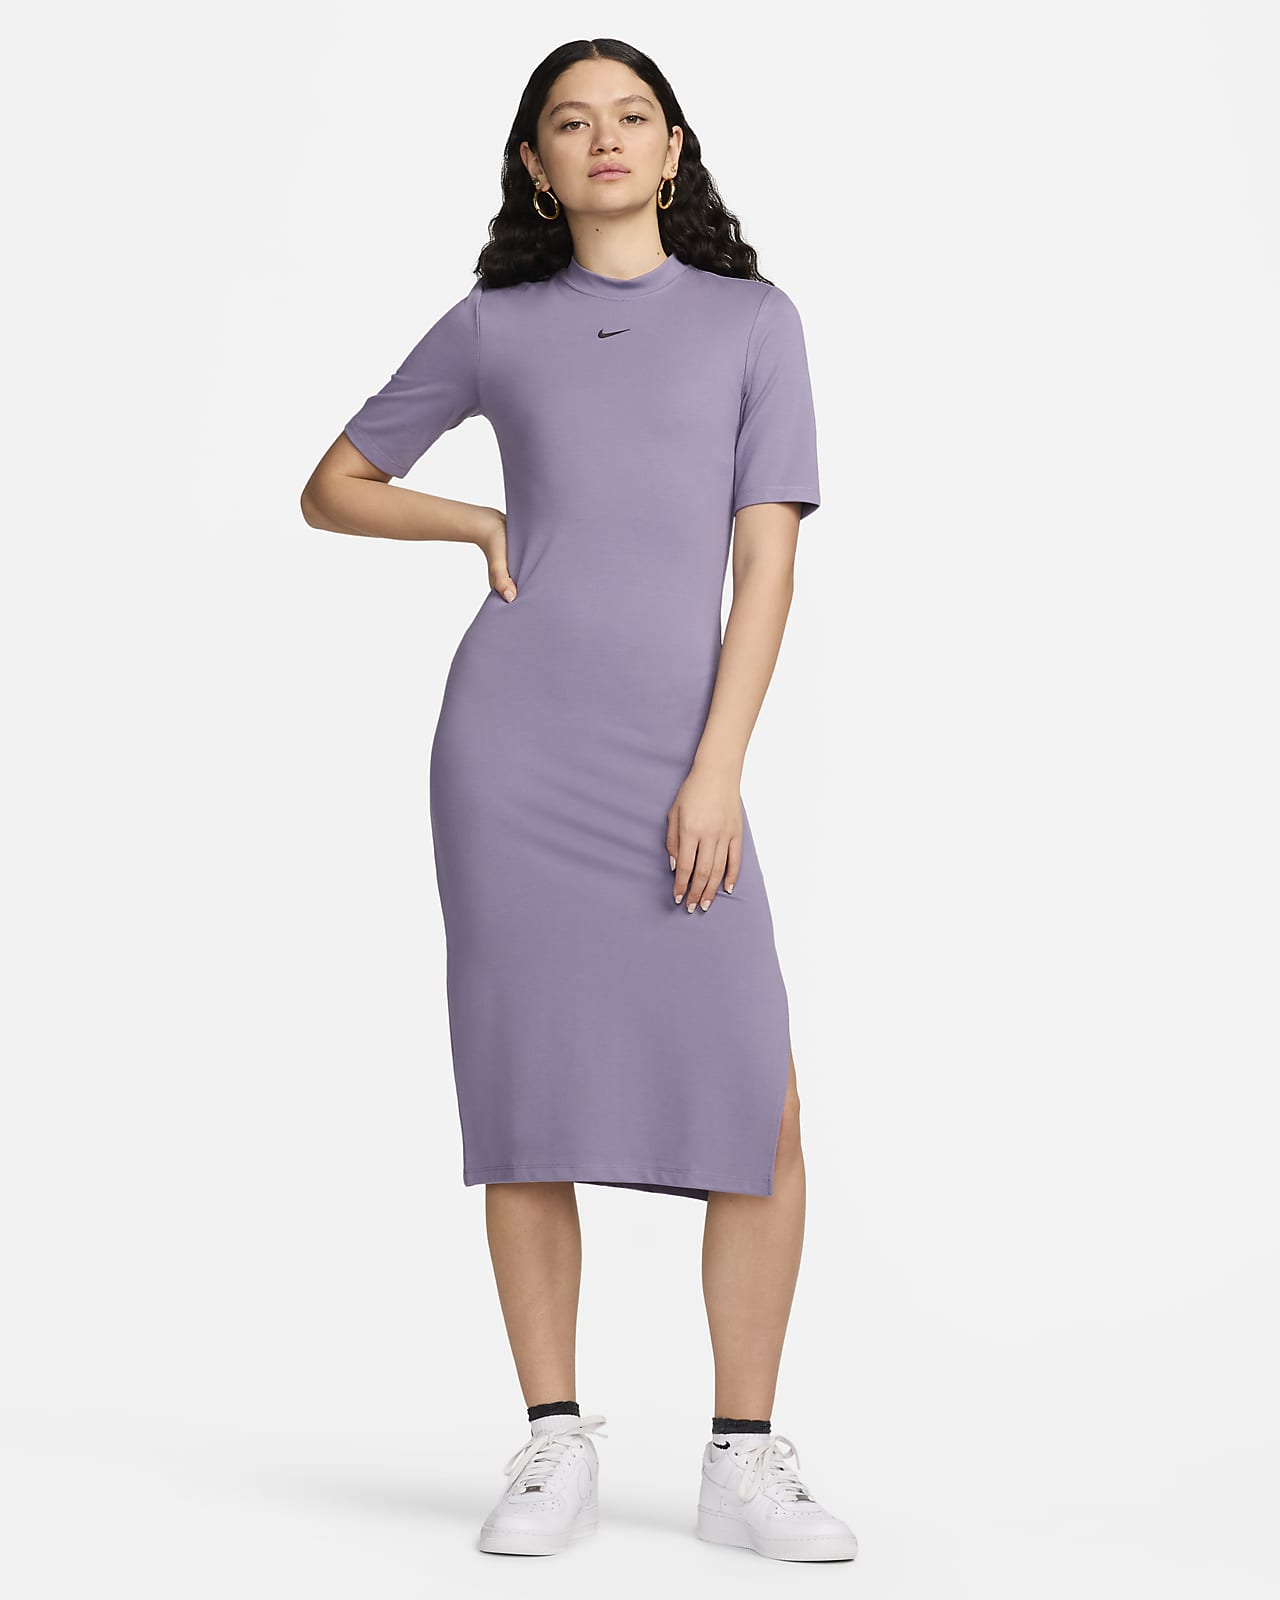 Women's Purple Dresses, Explore our New Arrivals